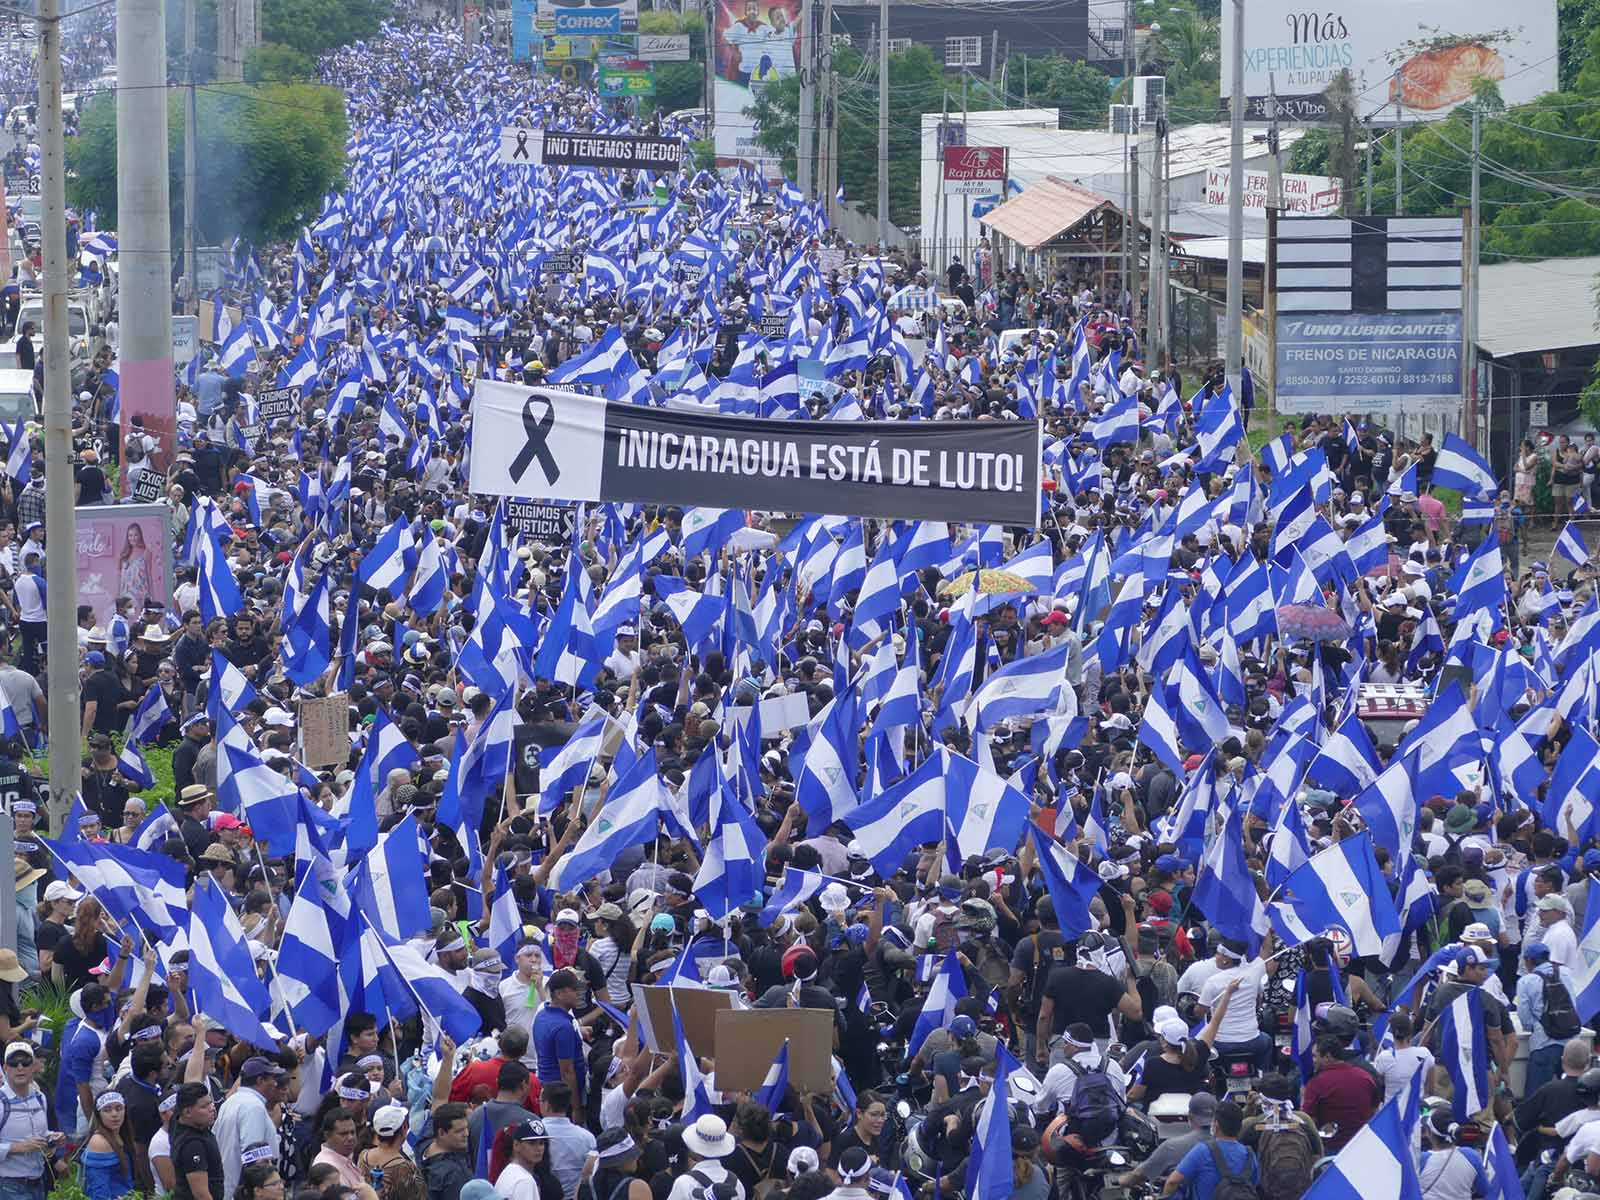 Una multitudinaria marcha ocurrida el 30 de mayo de 2018, que terminó en un ataque armado.